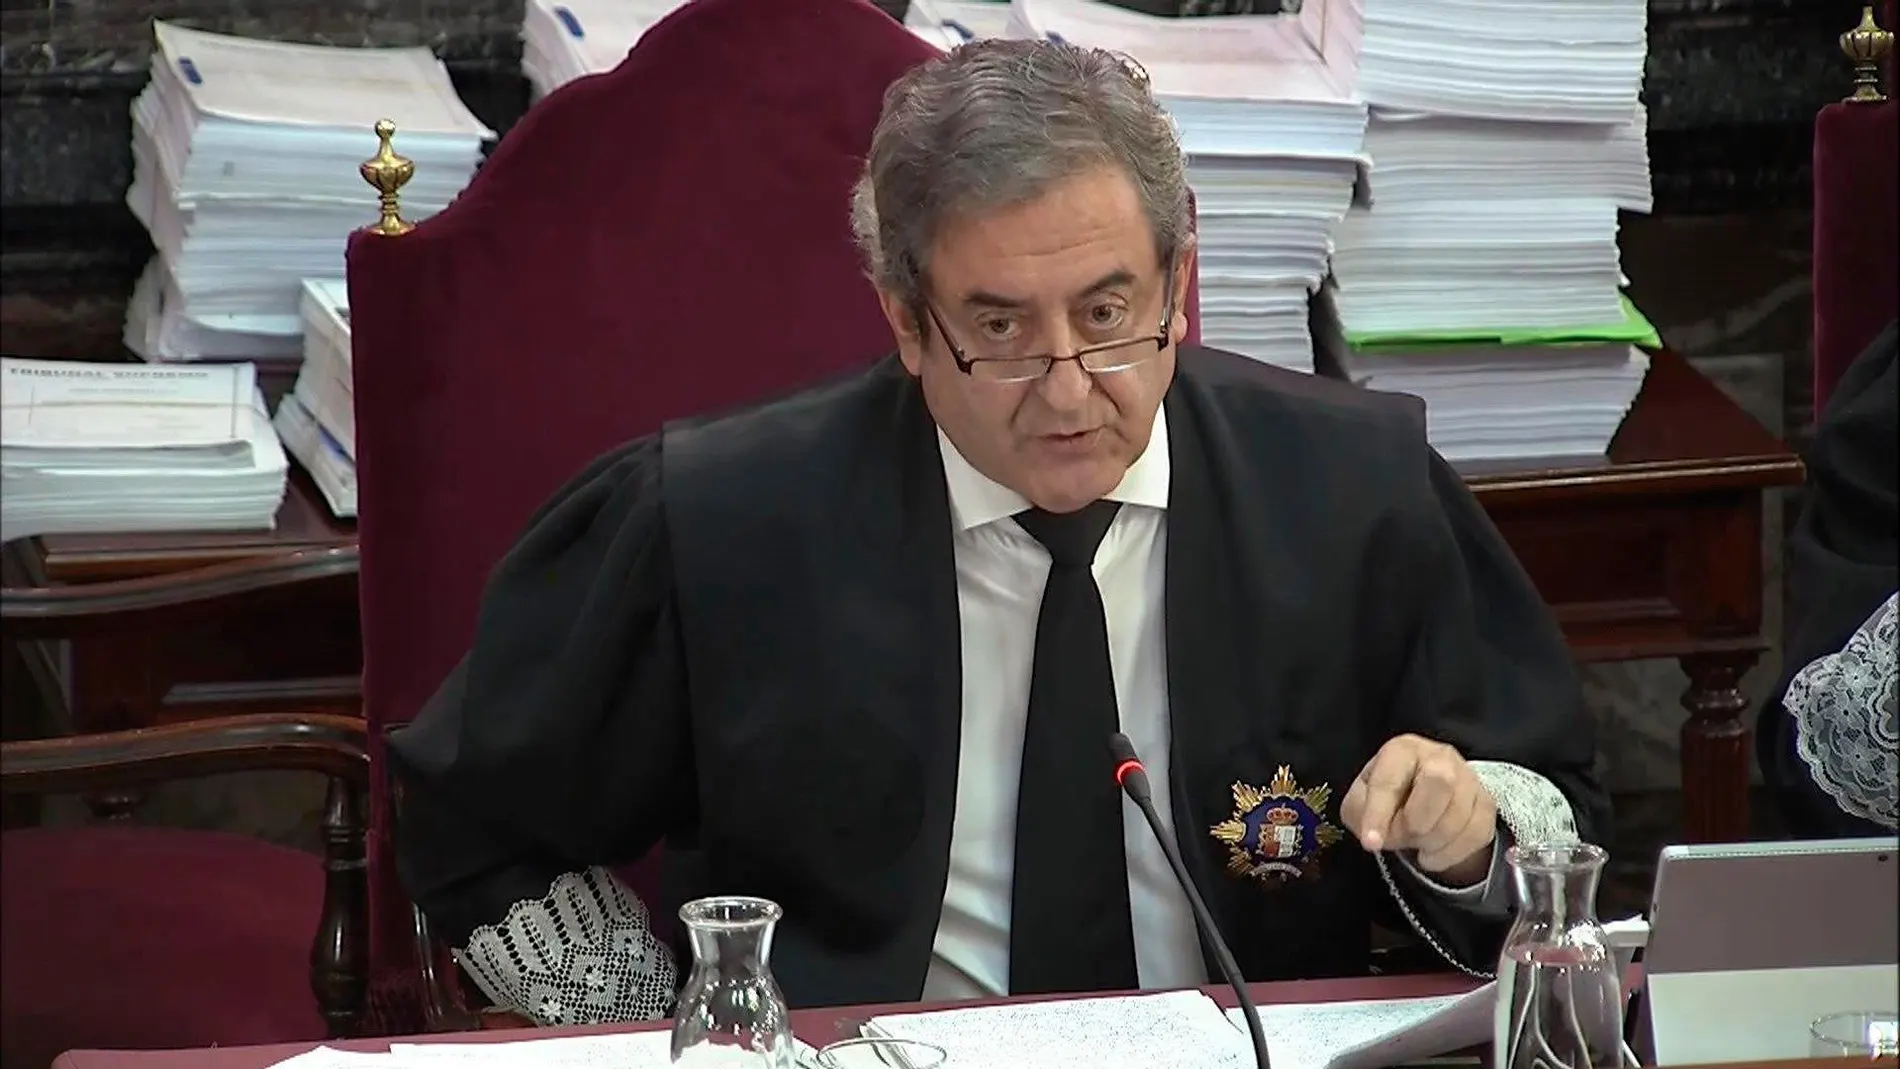 El fiscal Javier Zaragoza, durante una de las sesiones del juicio del "procés" a los líderes independentistas catalanes